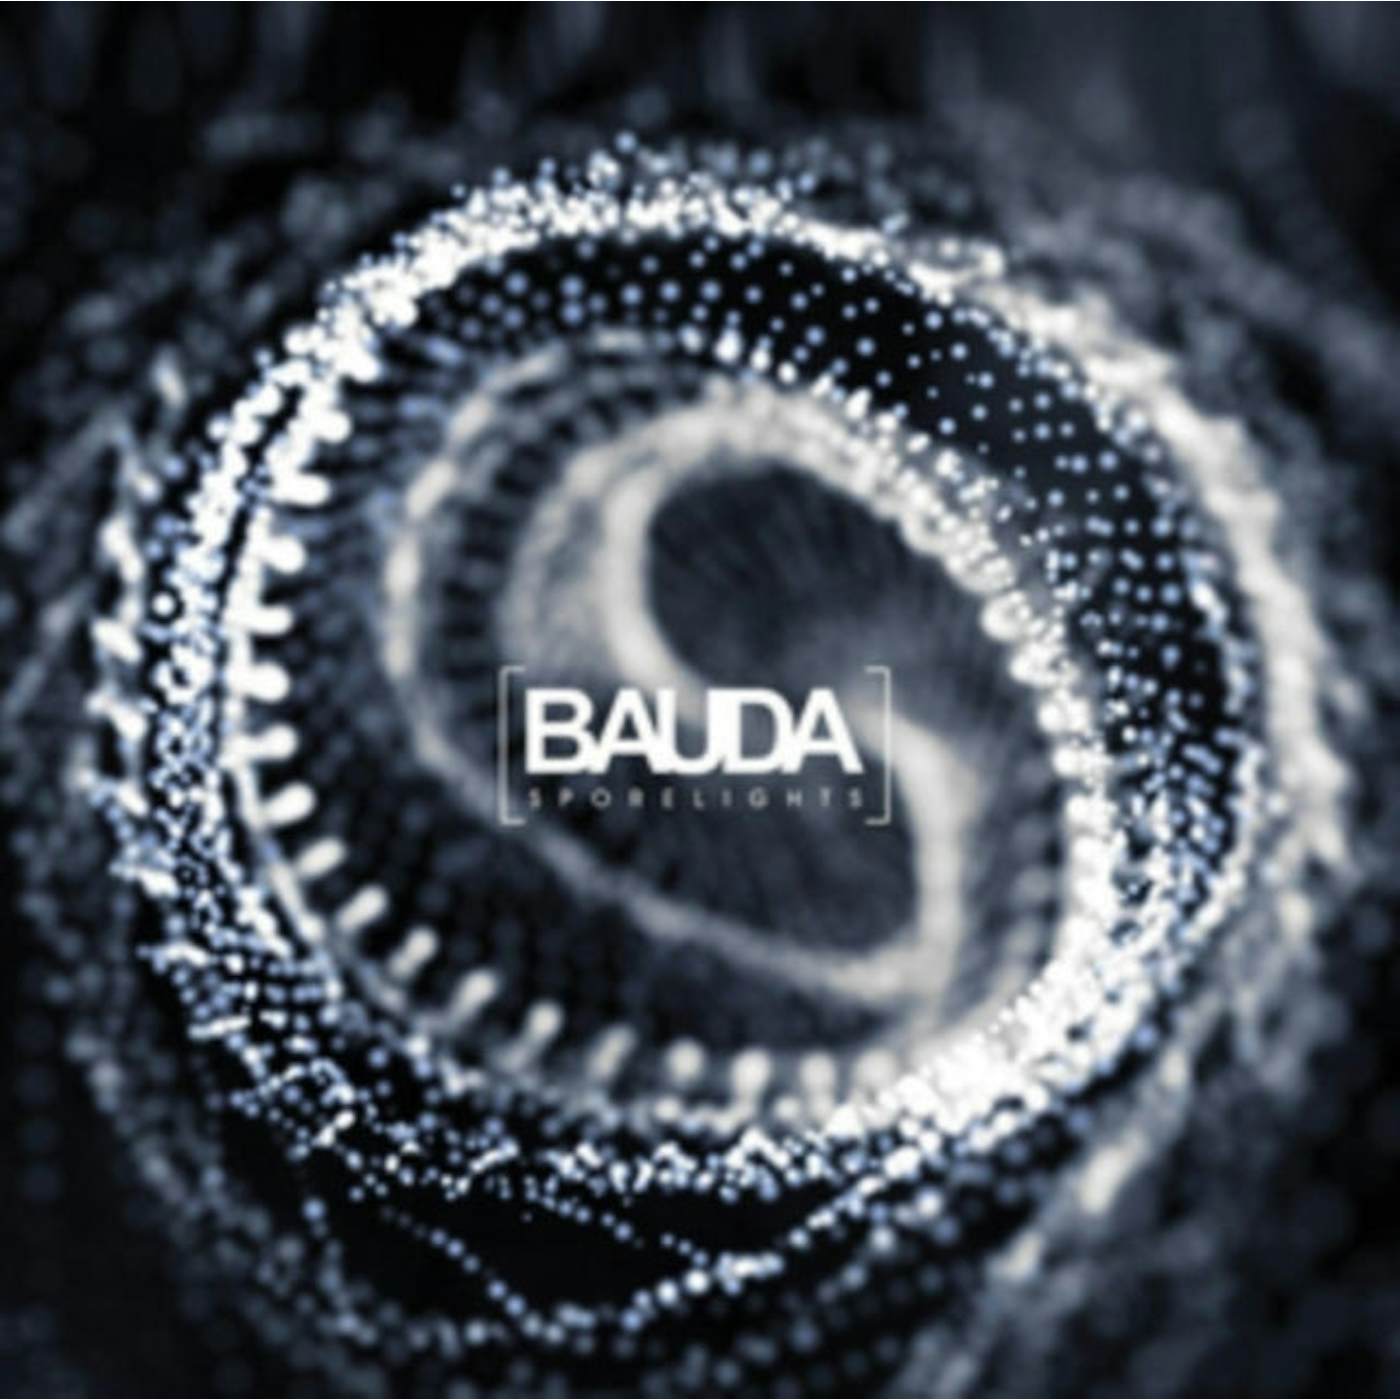 Bauda LP - Sporelights (Vinyl)